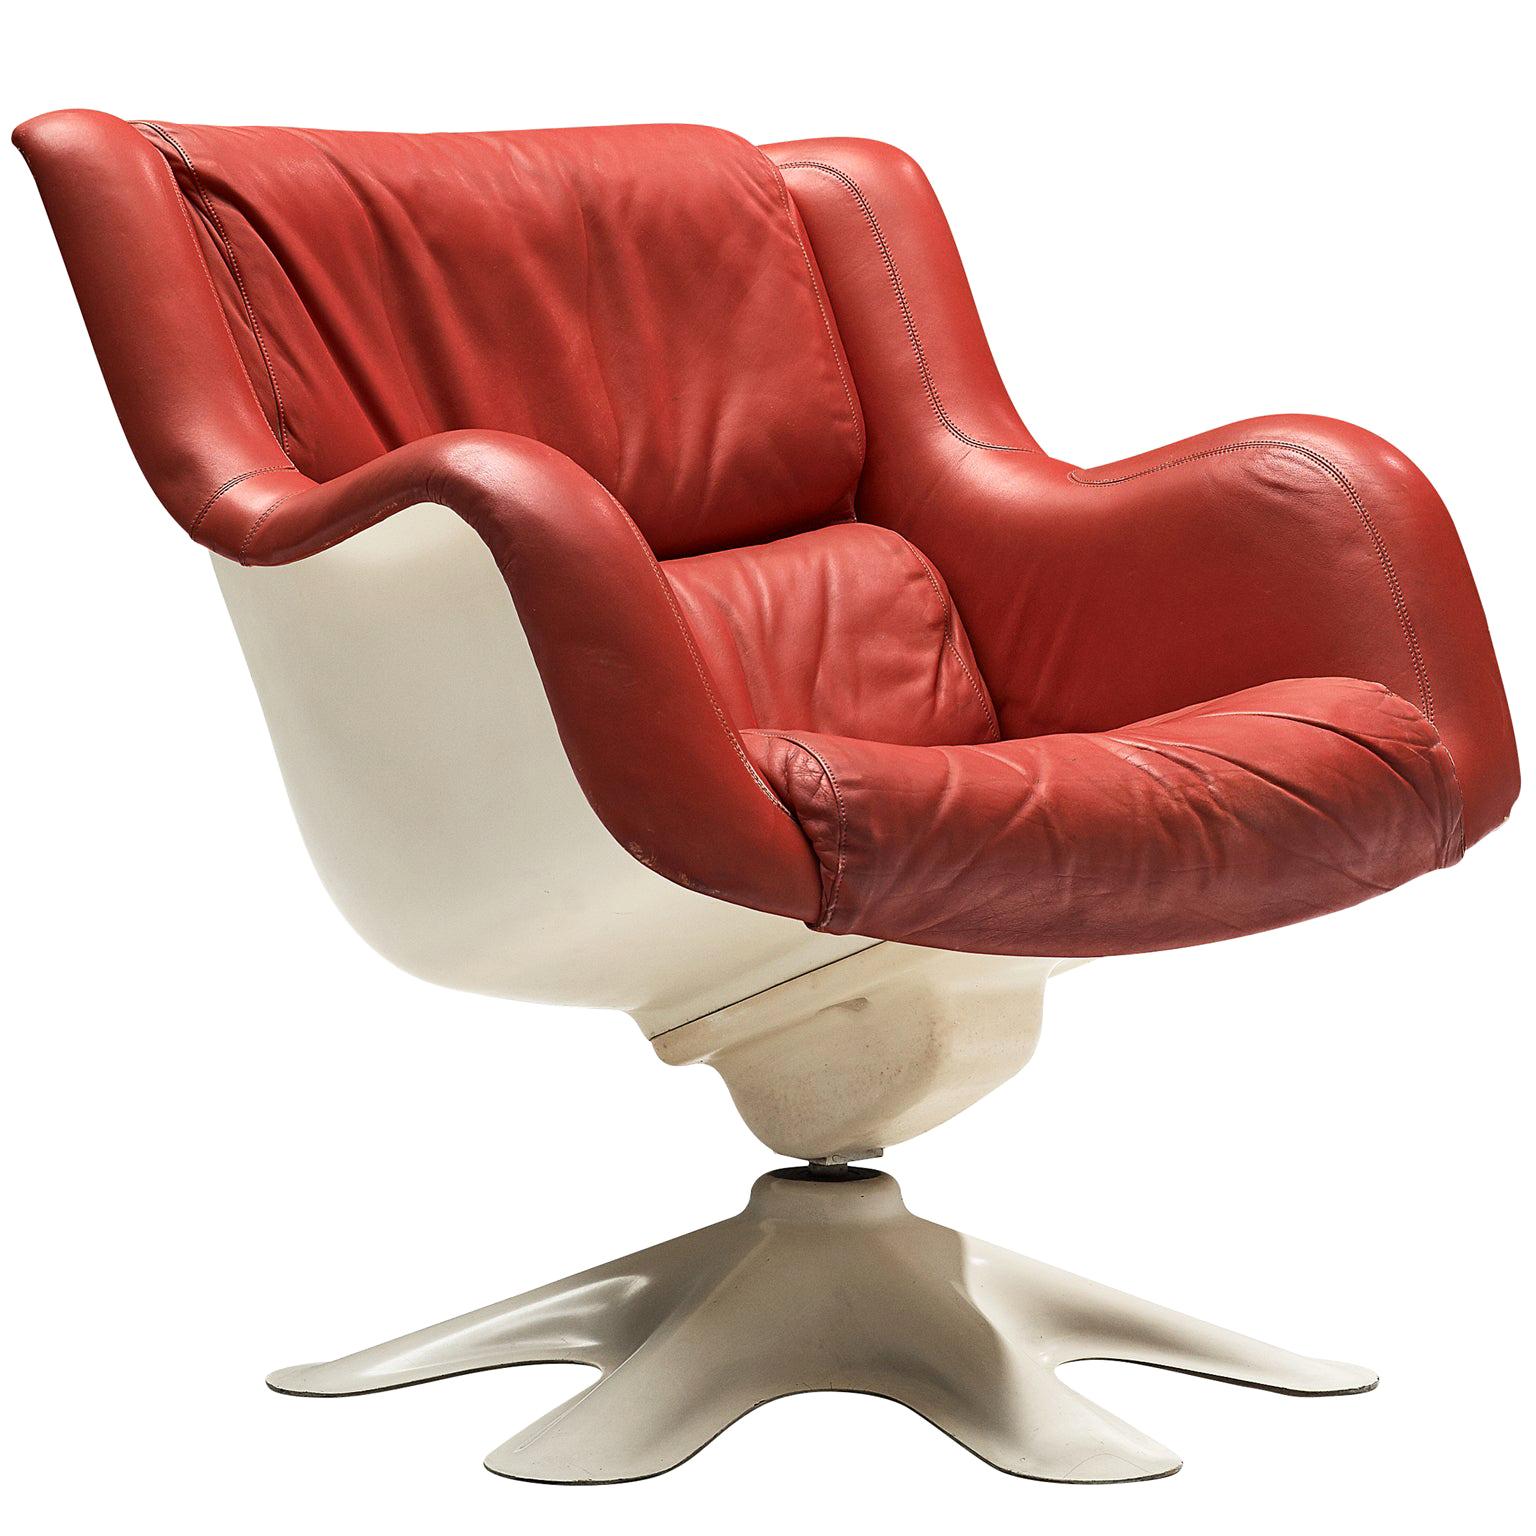 Yrjo Kukkapuro 'Karuselli' Lounge Chair in Red Leather